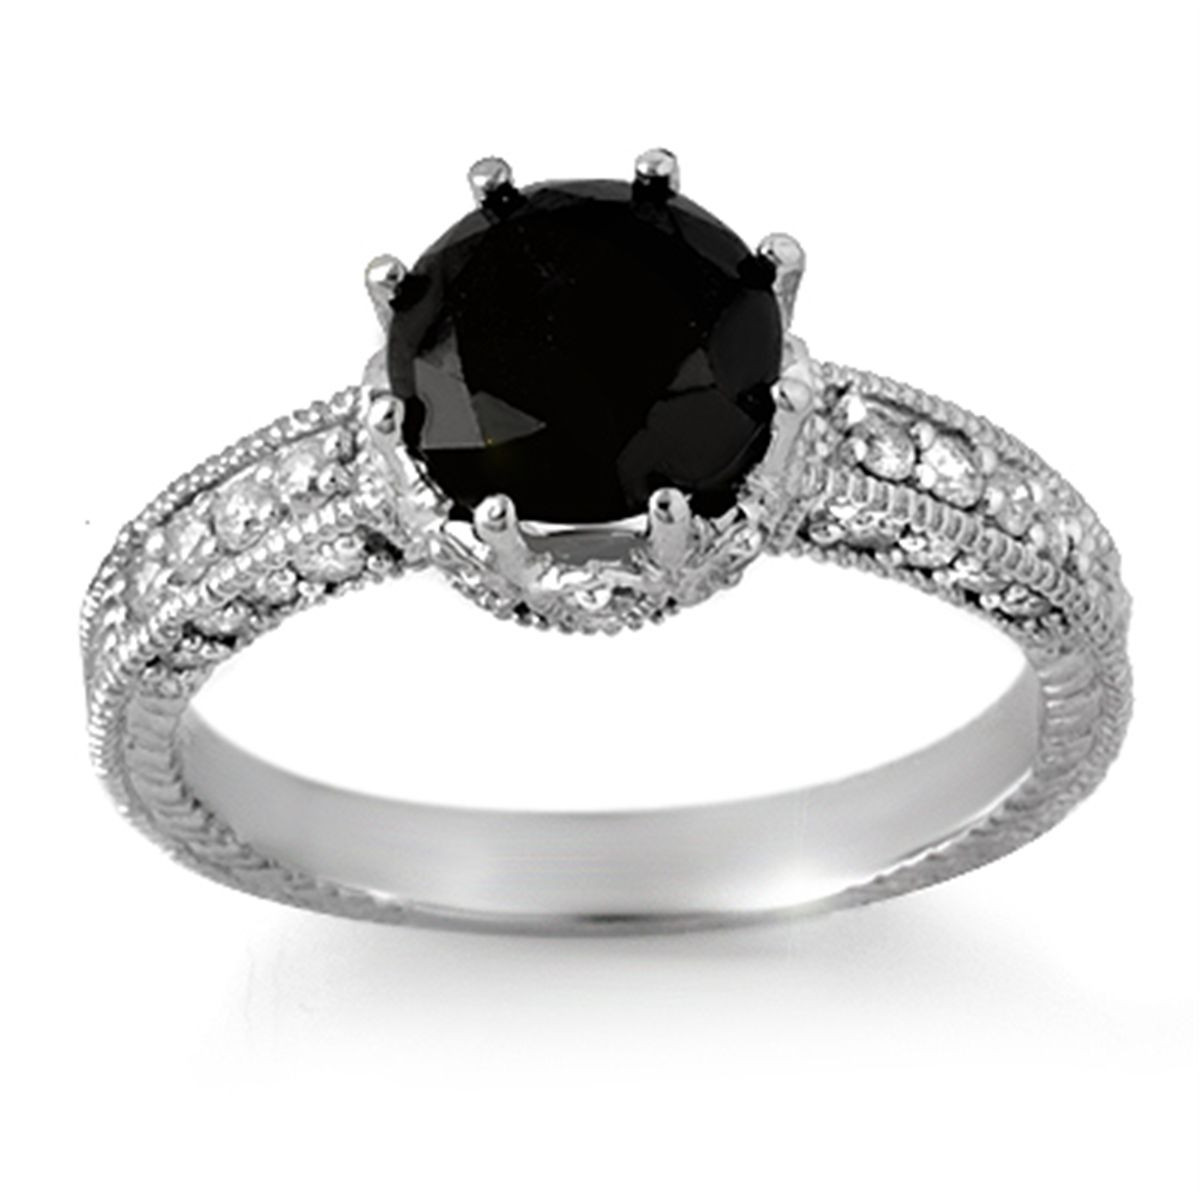 Wedding Rings With Black Diamonds
 The Sensuous Black Diamond Rings